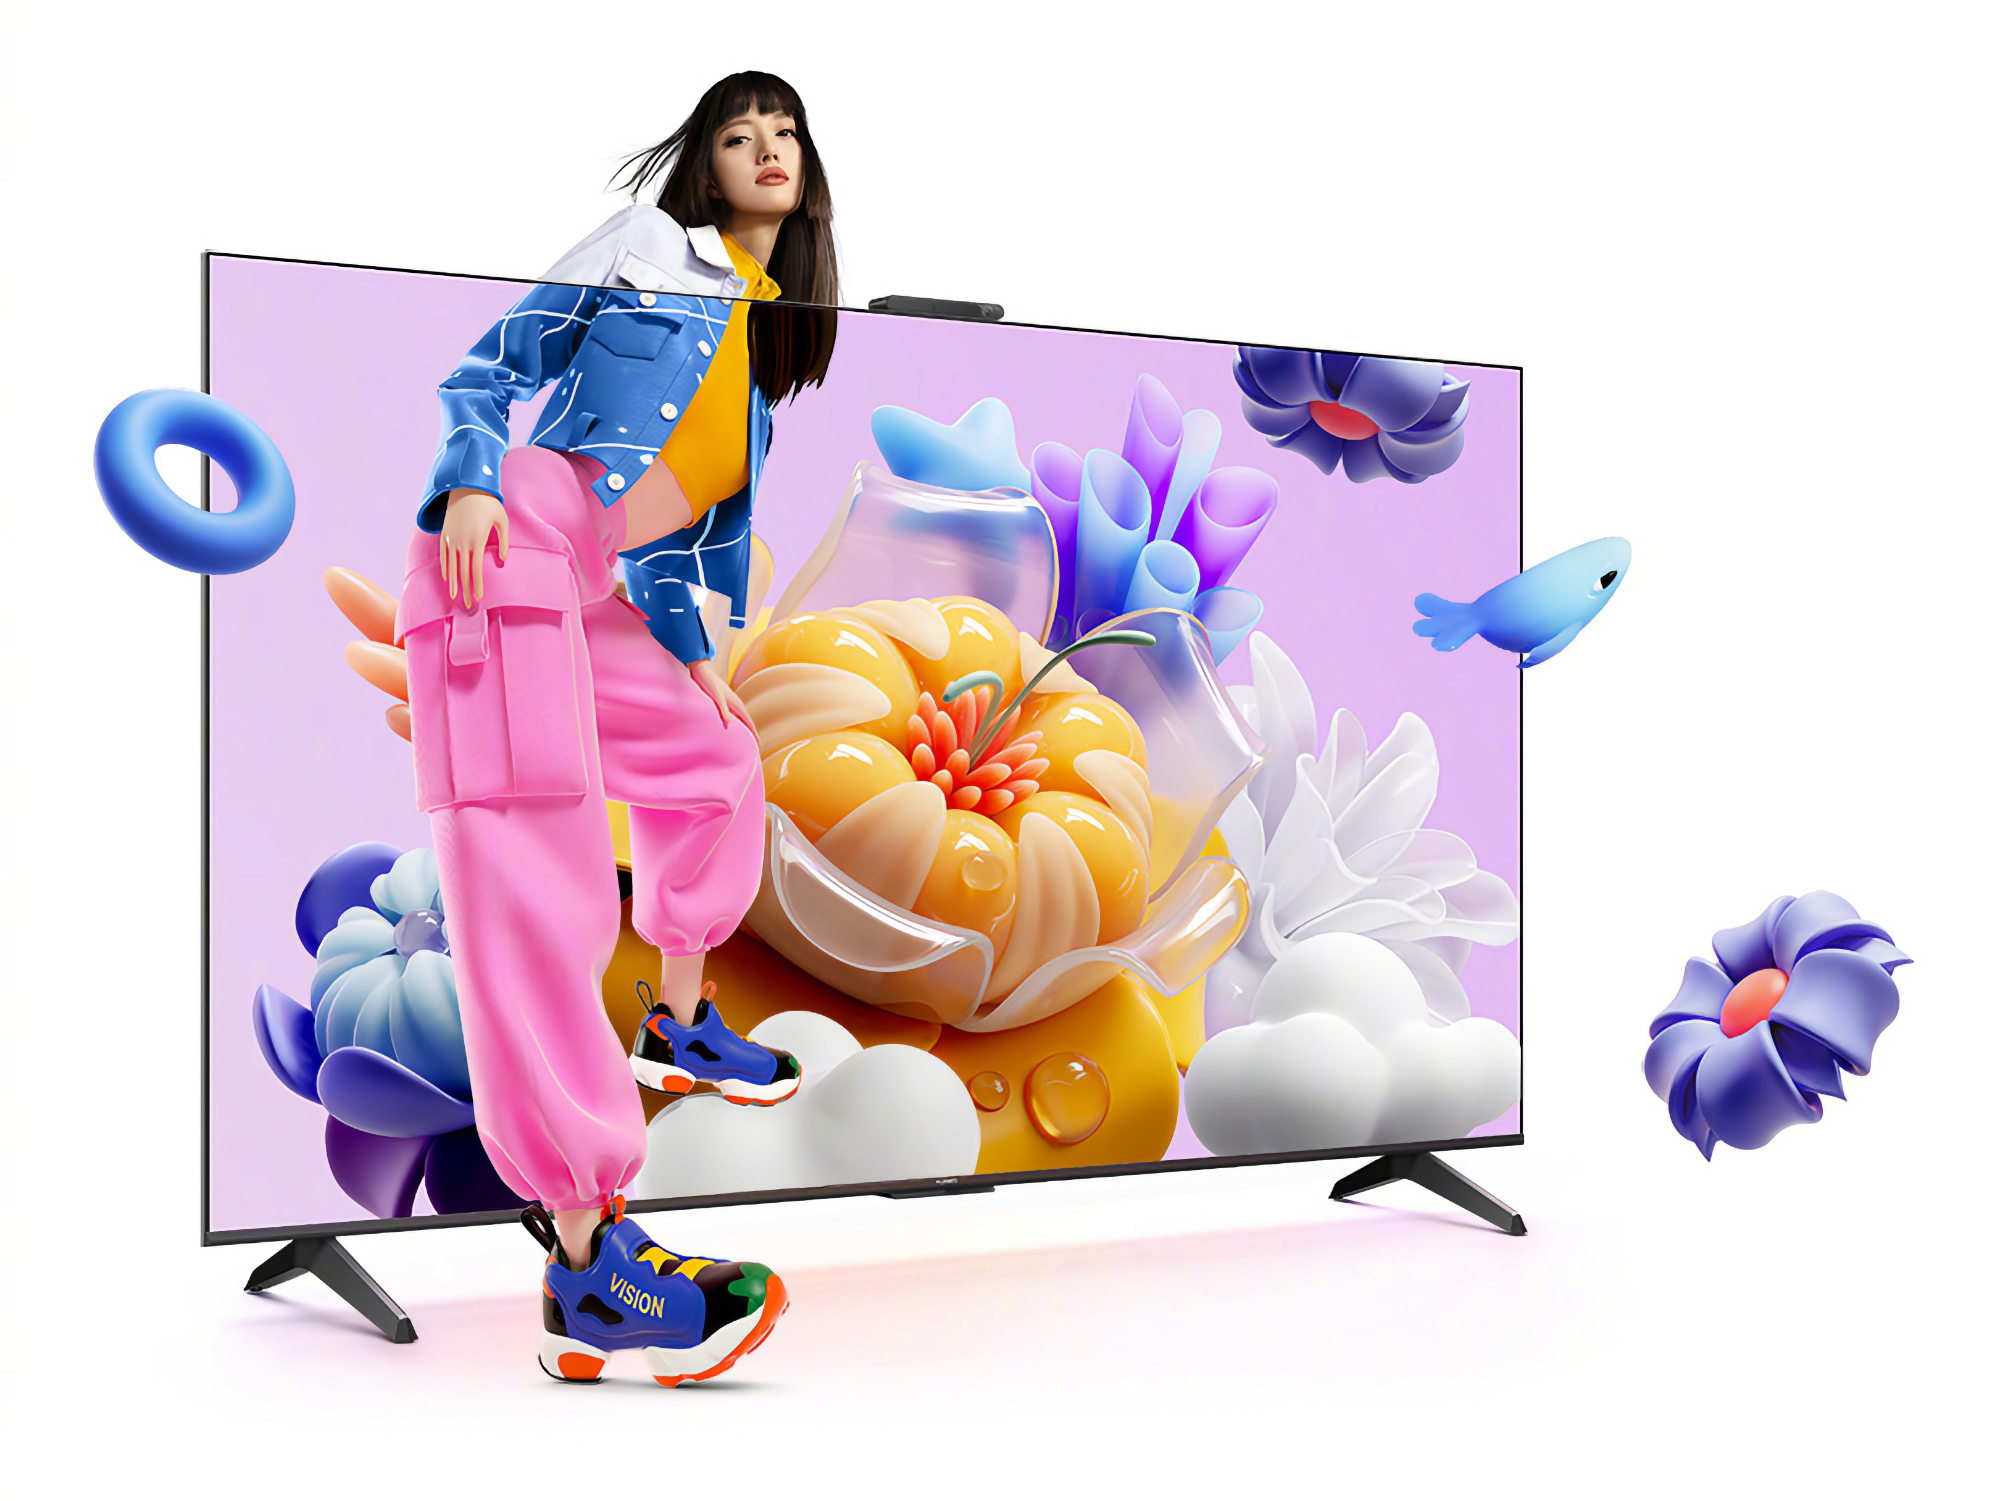 Huawei Vision Smart TV SE3: una gamma di smart TV con schermi 4K a 120 Hz e HarmonyOS a bordo, con un prezzo a partire da 340 dollari.